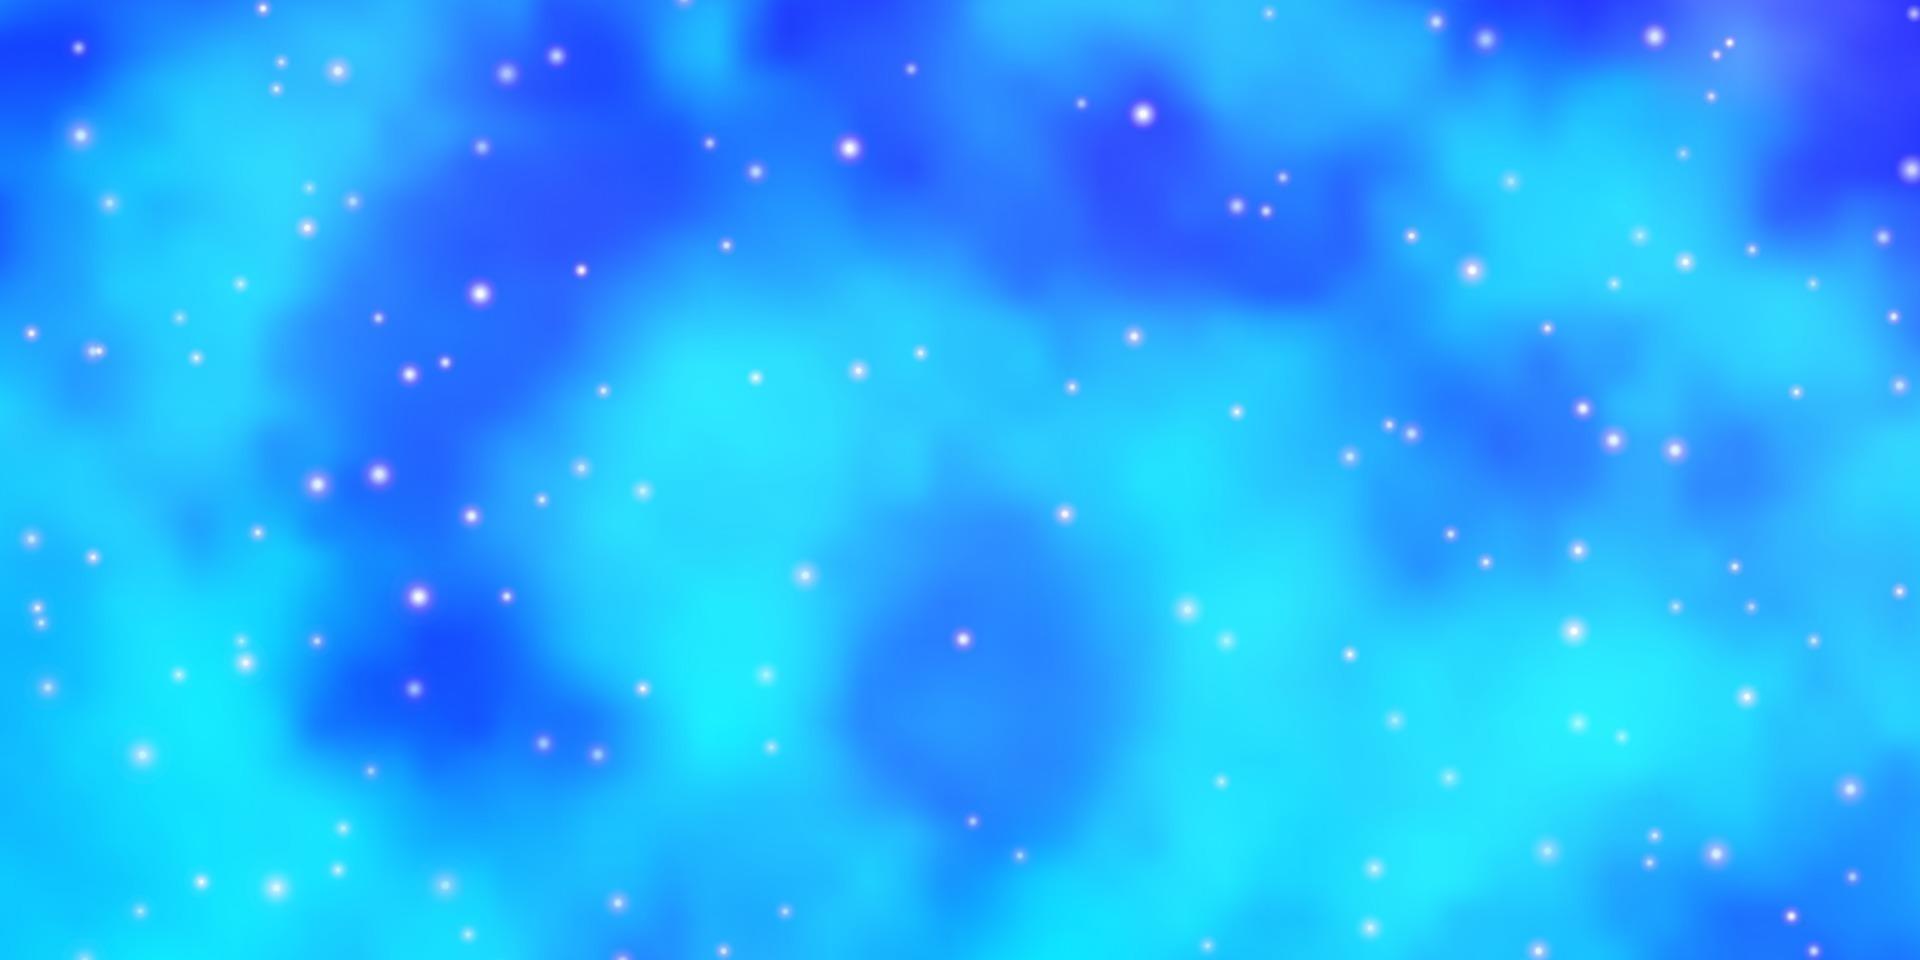 sfondo vettoriale rosa chiaro, blu con stelle piccole e grandi.